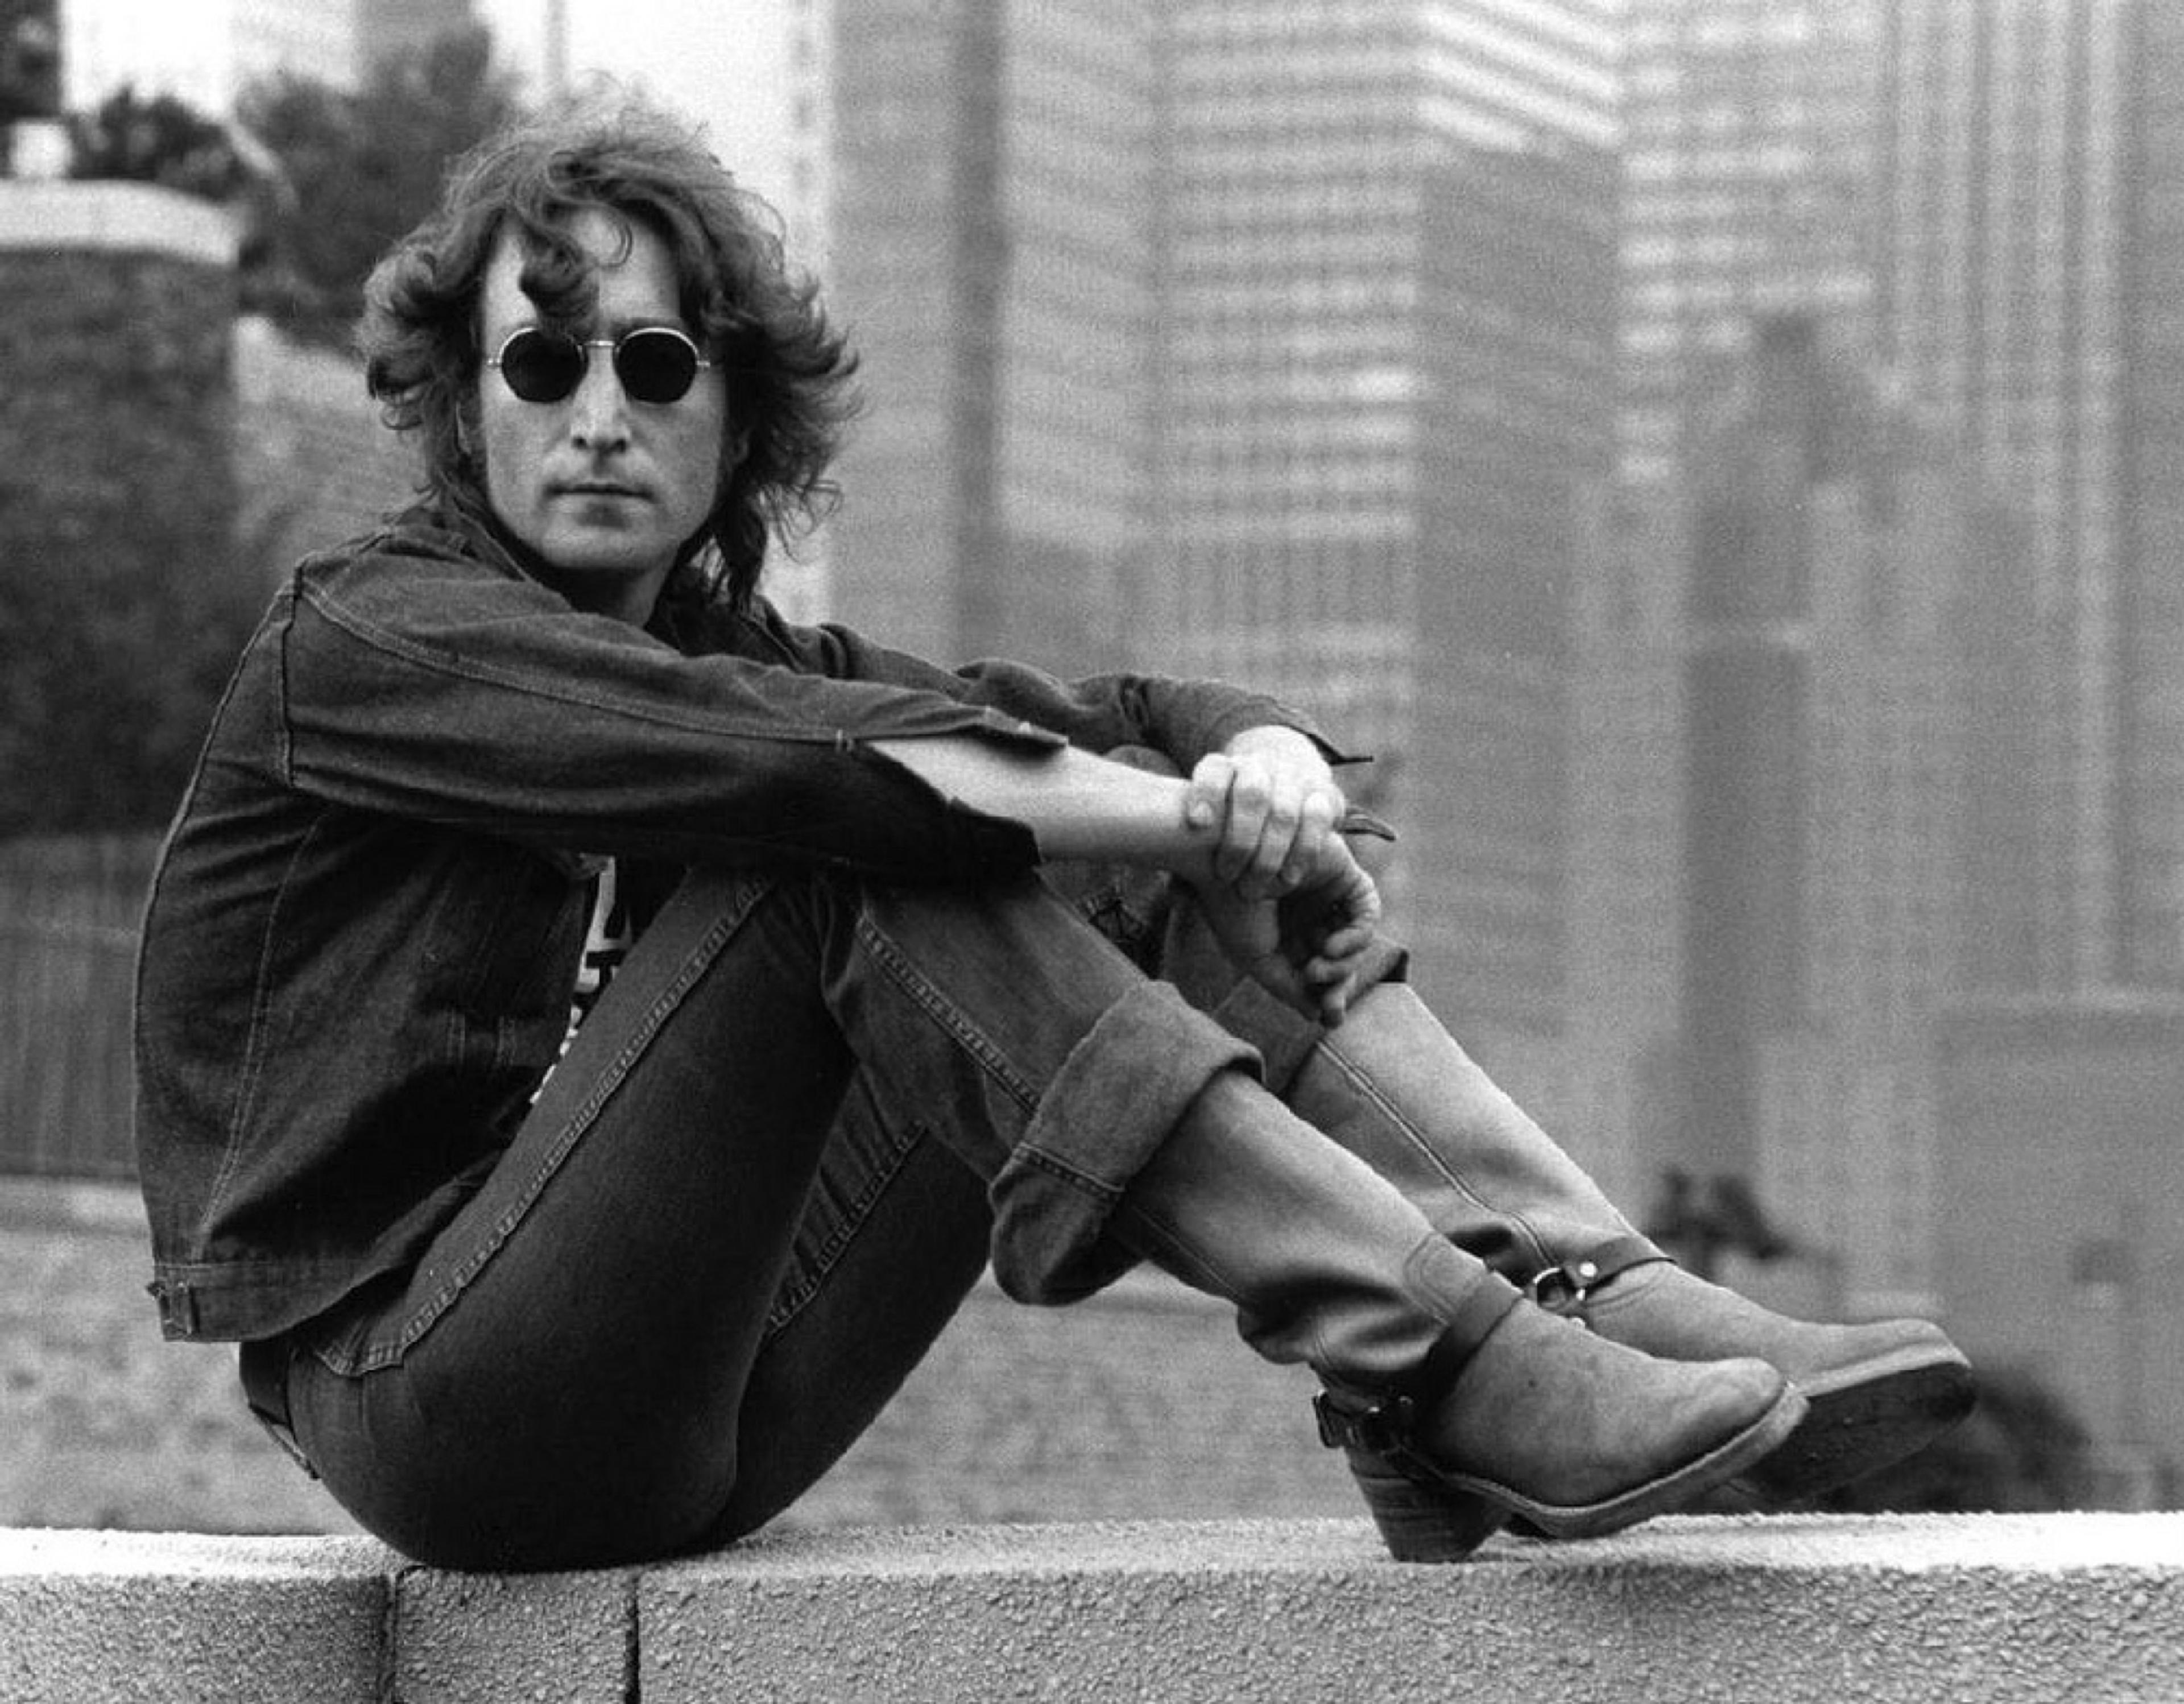 John Lennon auf einer Mauer sitzend